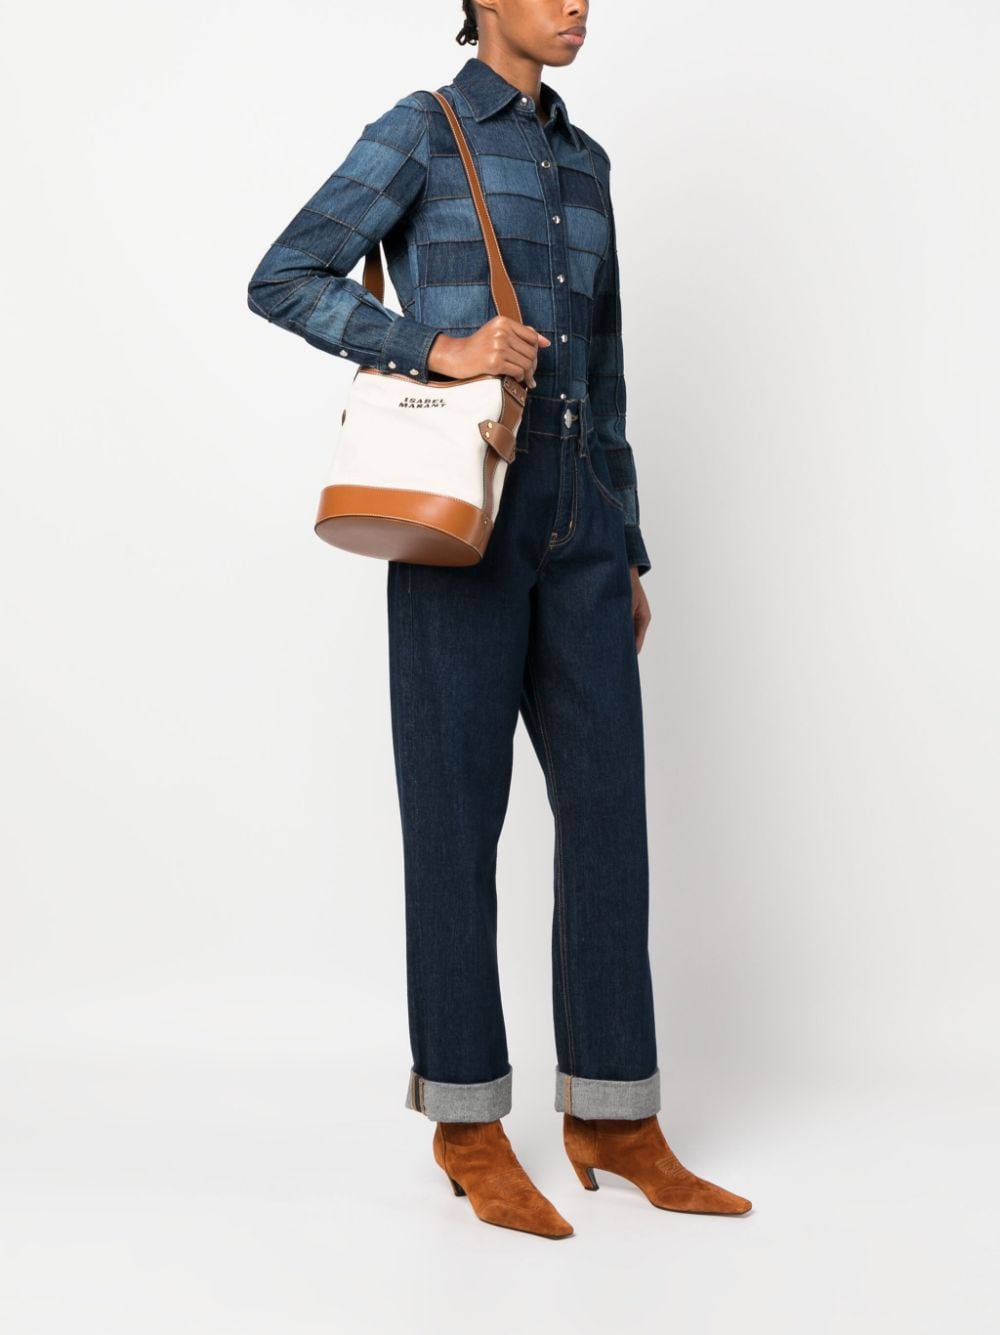 Isabel Marant Women's Samara Small Suede Leather Shoulder Bag - Natural - Shoulder Bags